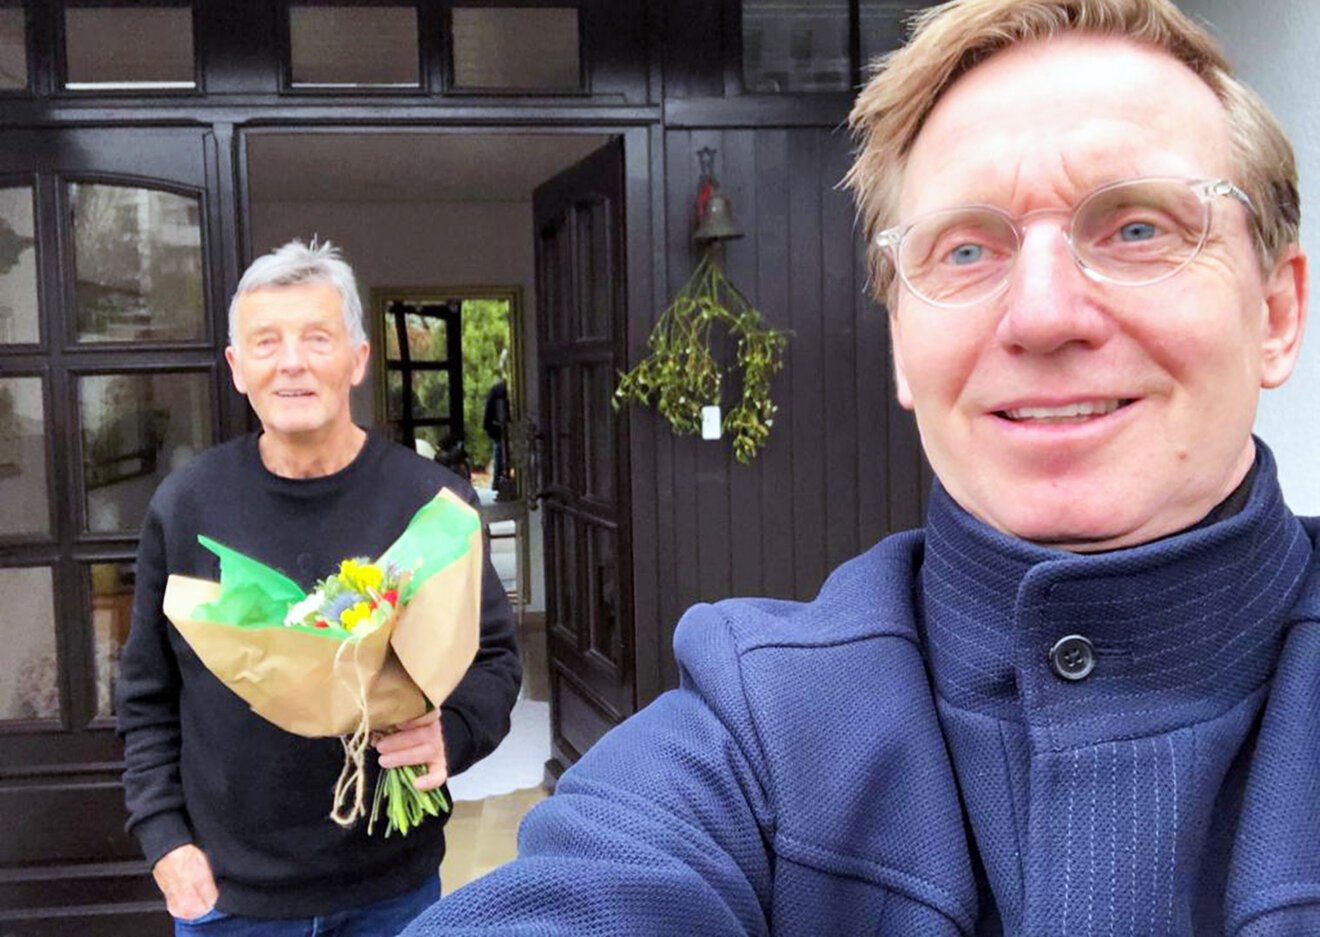 Der ehemalige VfL Wolfsburg Spieler Roy Präger überreicht einen Blumenstrauß.